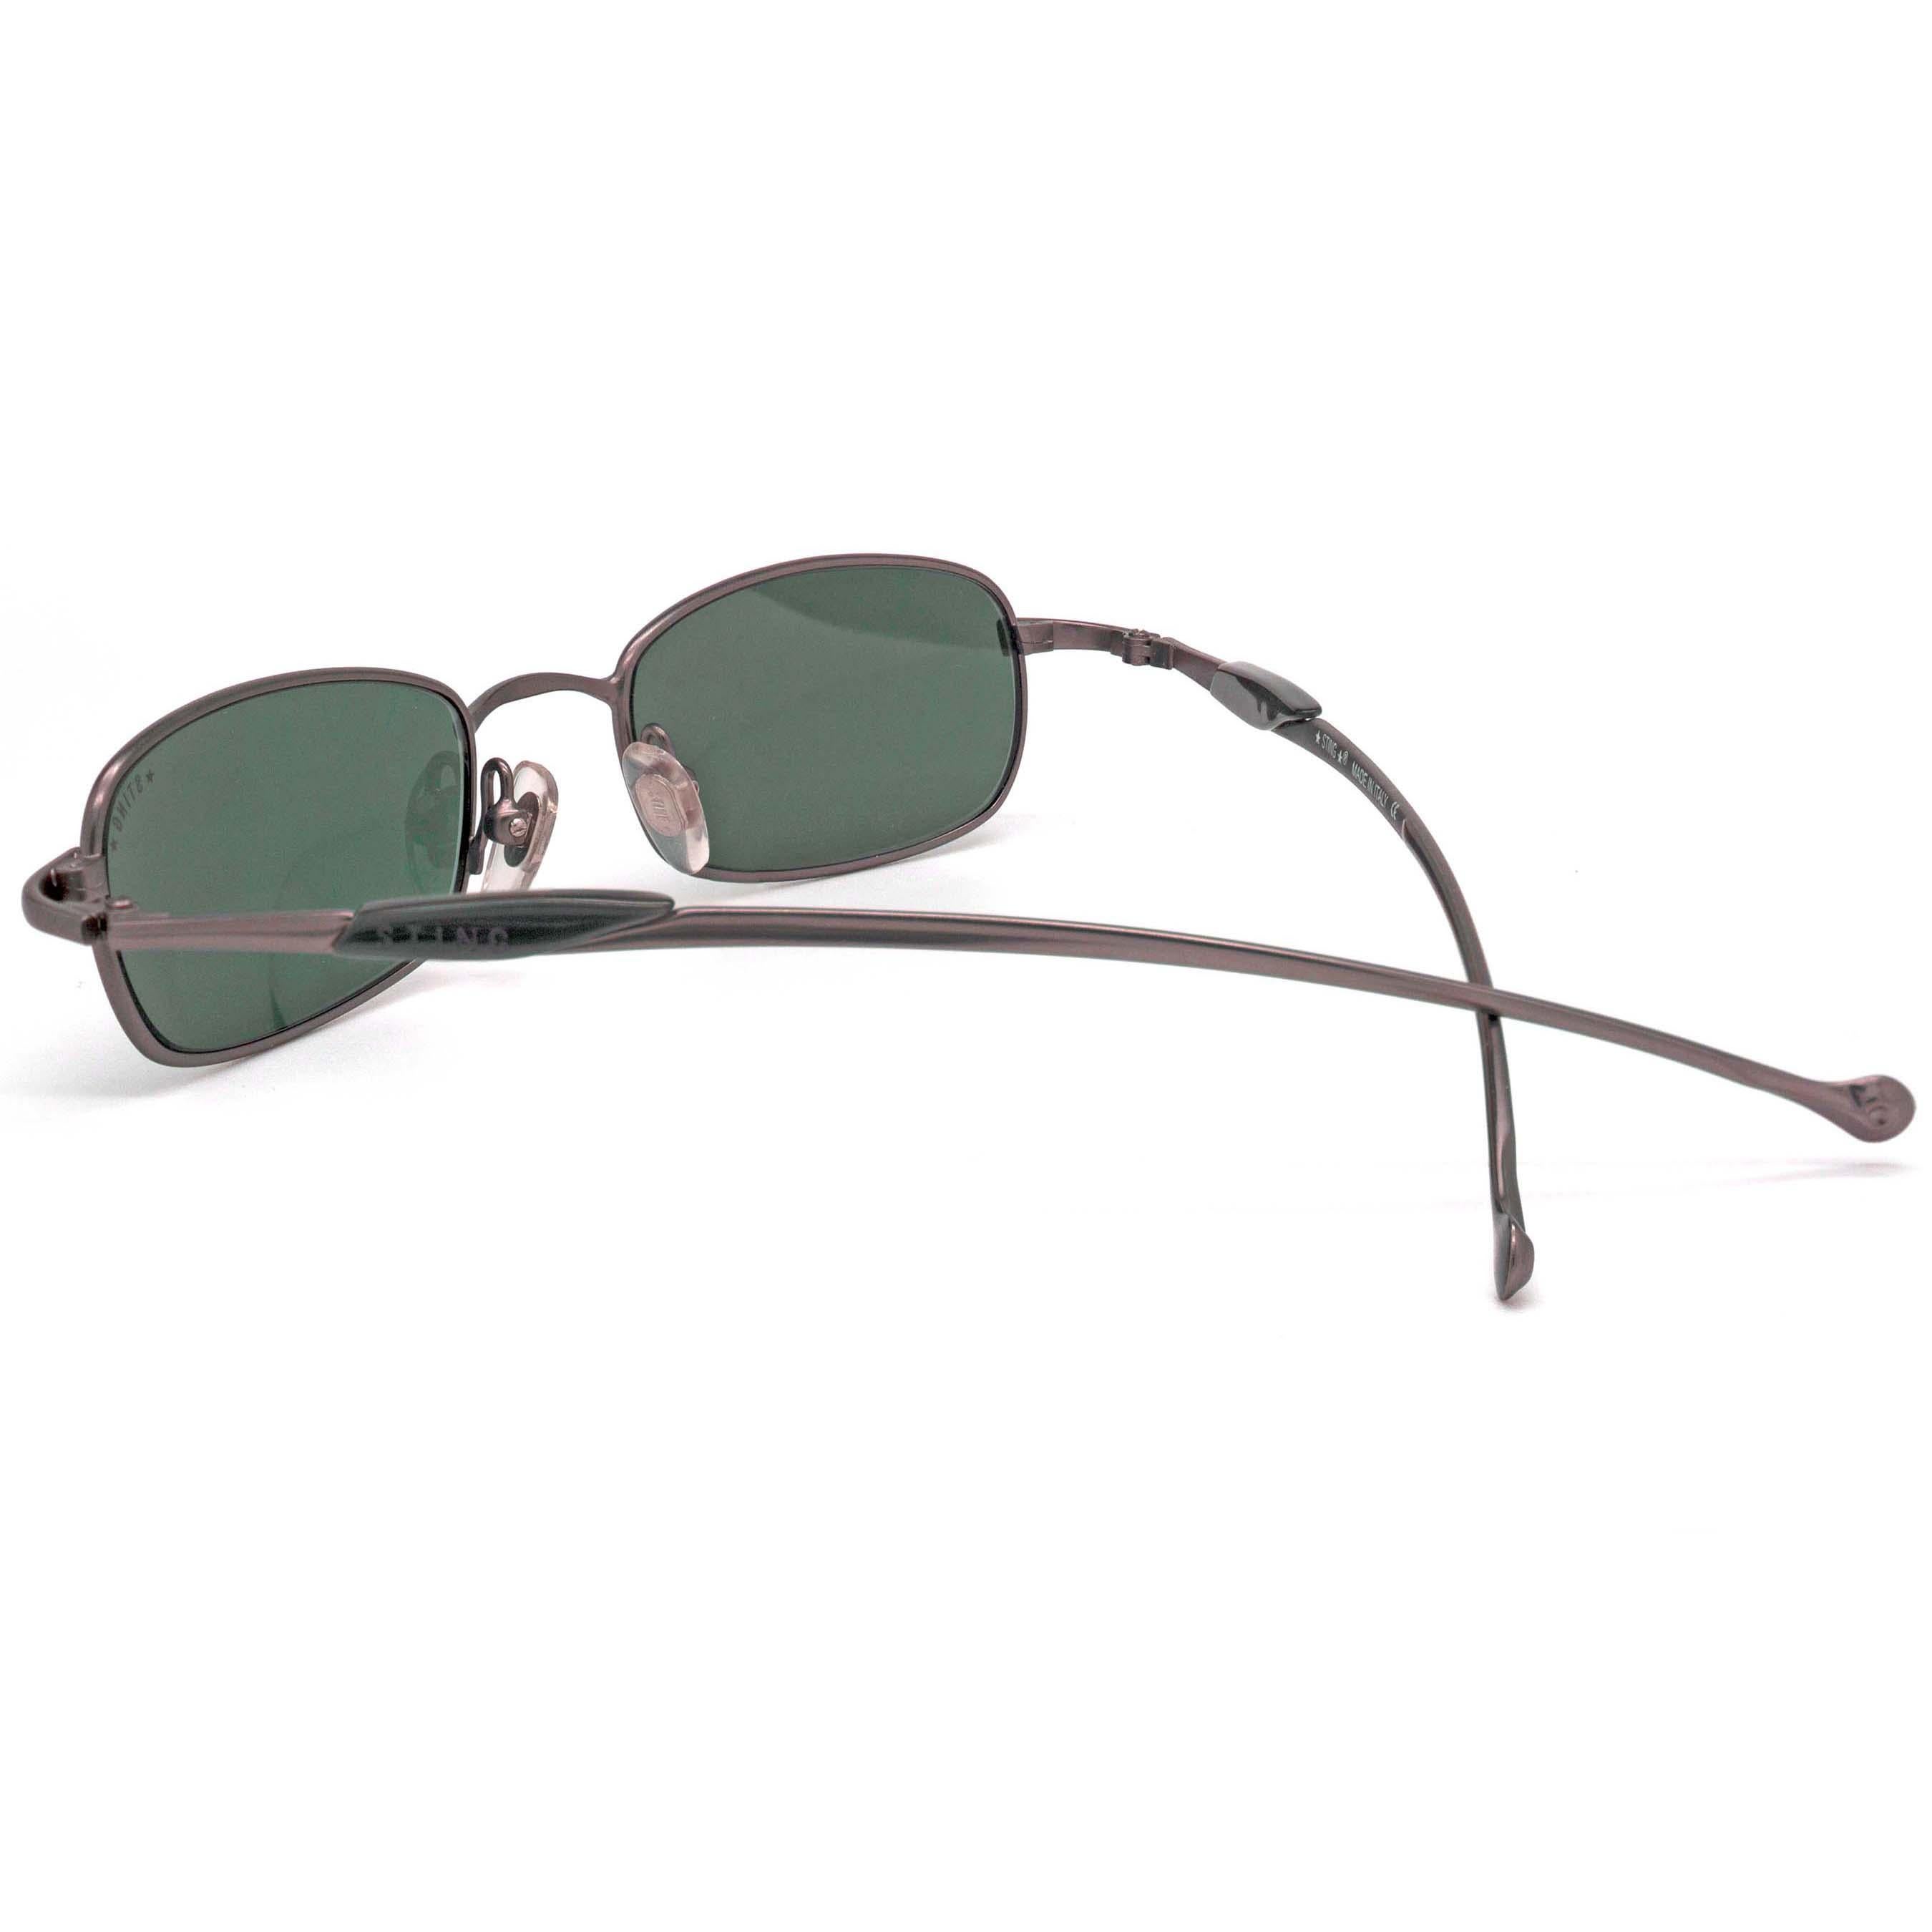 Sting vintage sunglasses slim In New Condition For Sale In Santa Clarita, CA